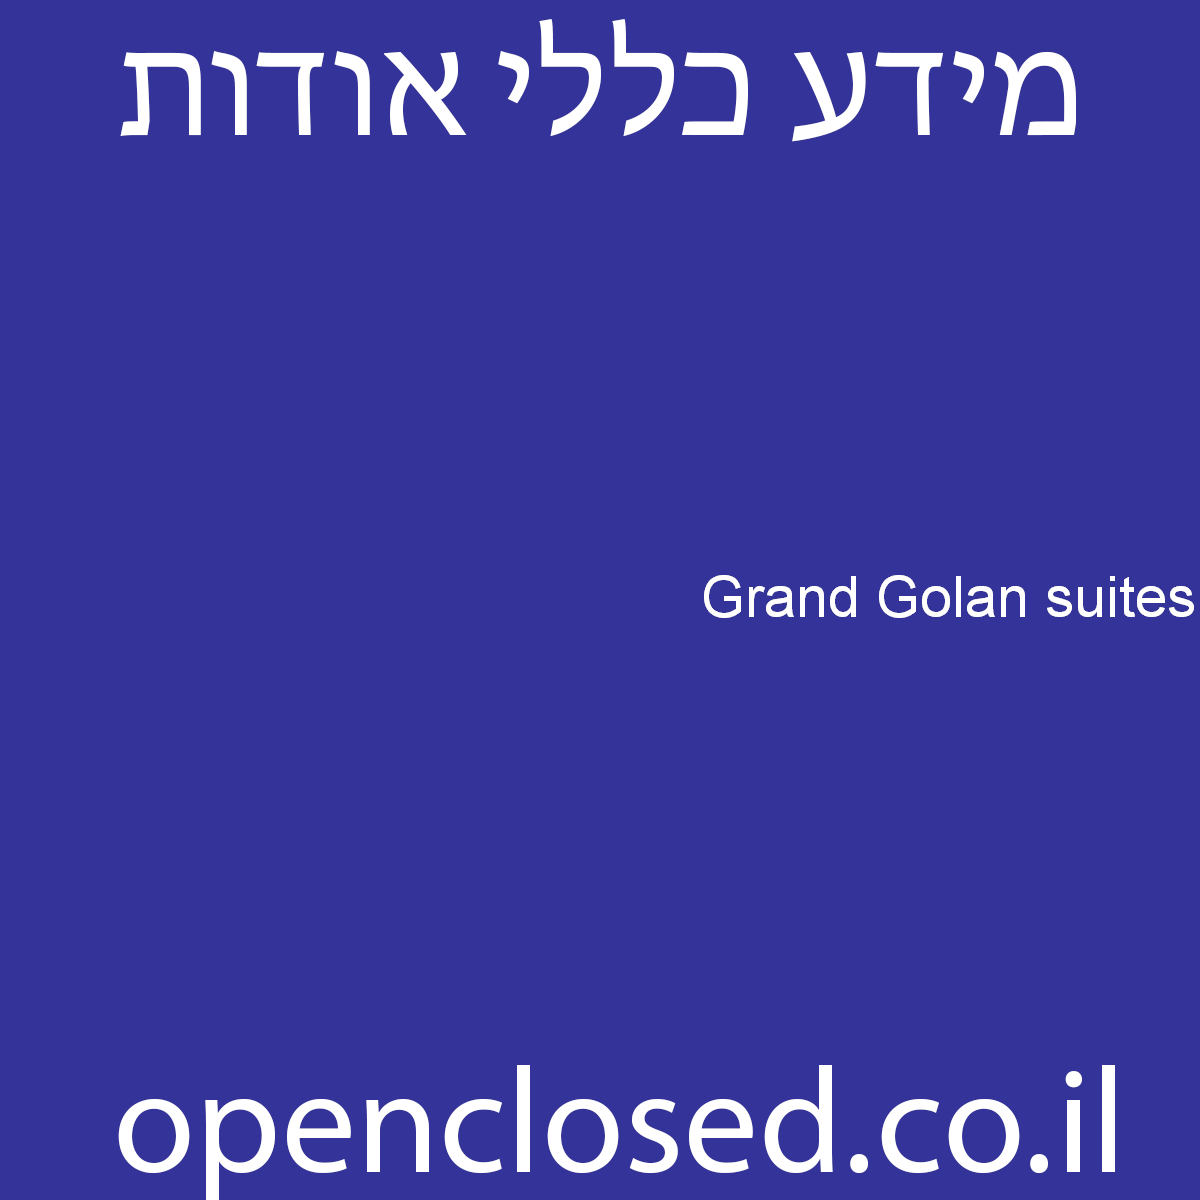 Grand Golan suites